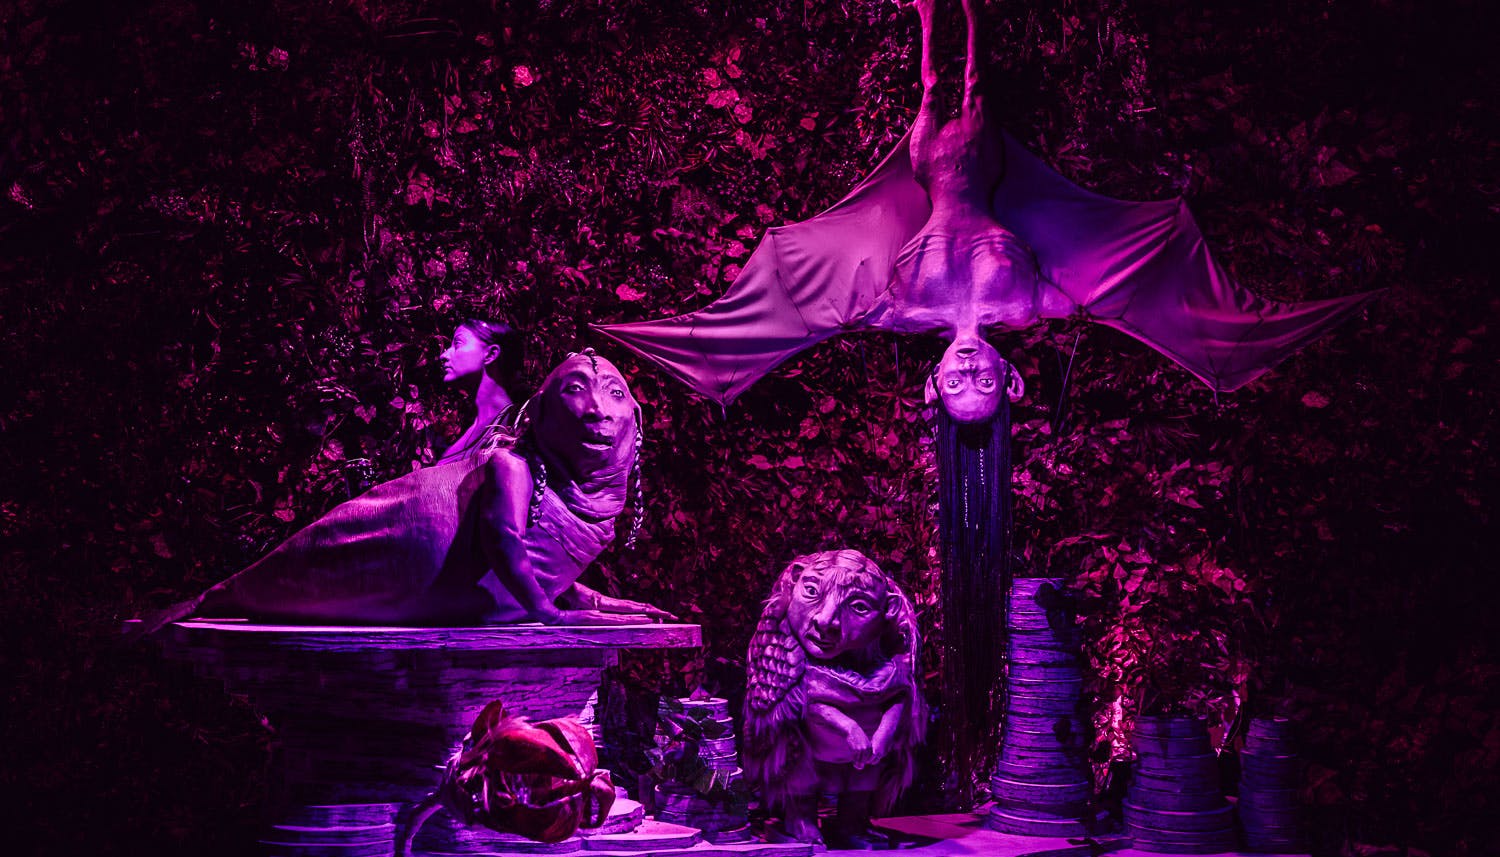 Una scenografia surreale. Delle strane sculture di figure in parte zoomorfe in parte umane davanti a uno sfondo di fogliame. Tutto è illuminato da una tenue luce violetta.